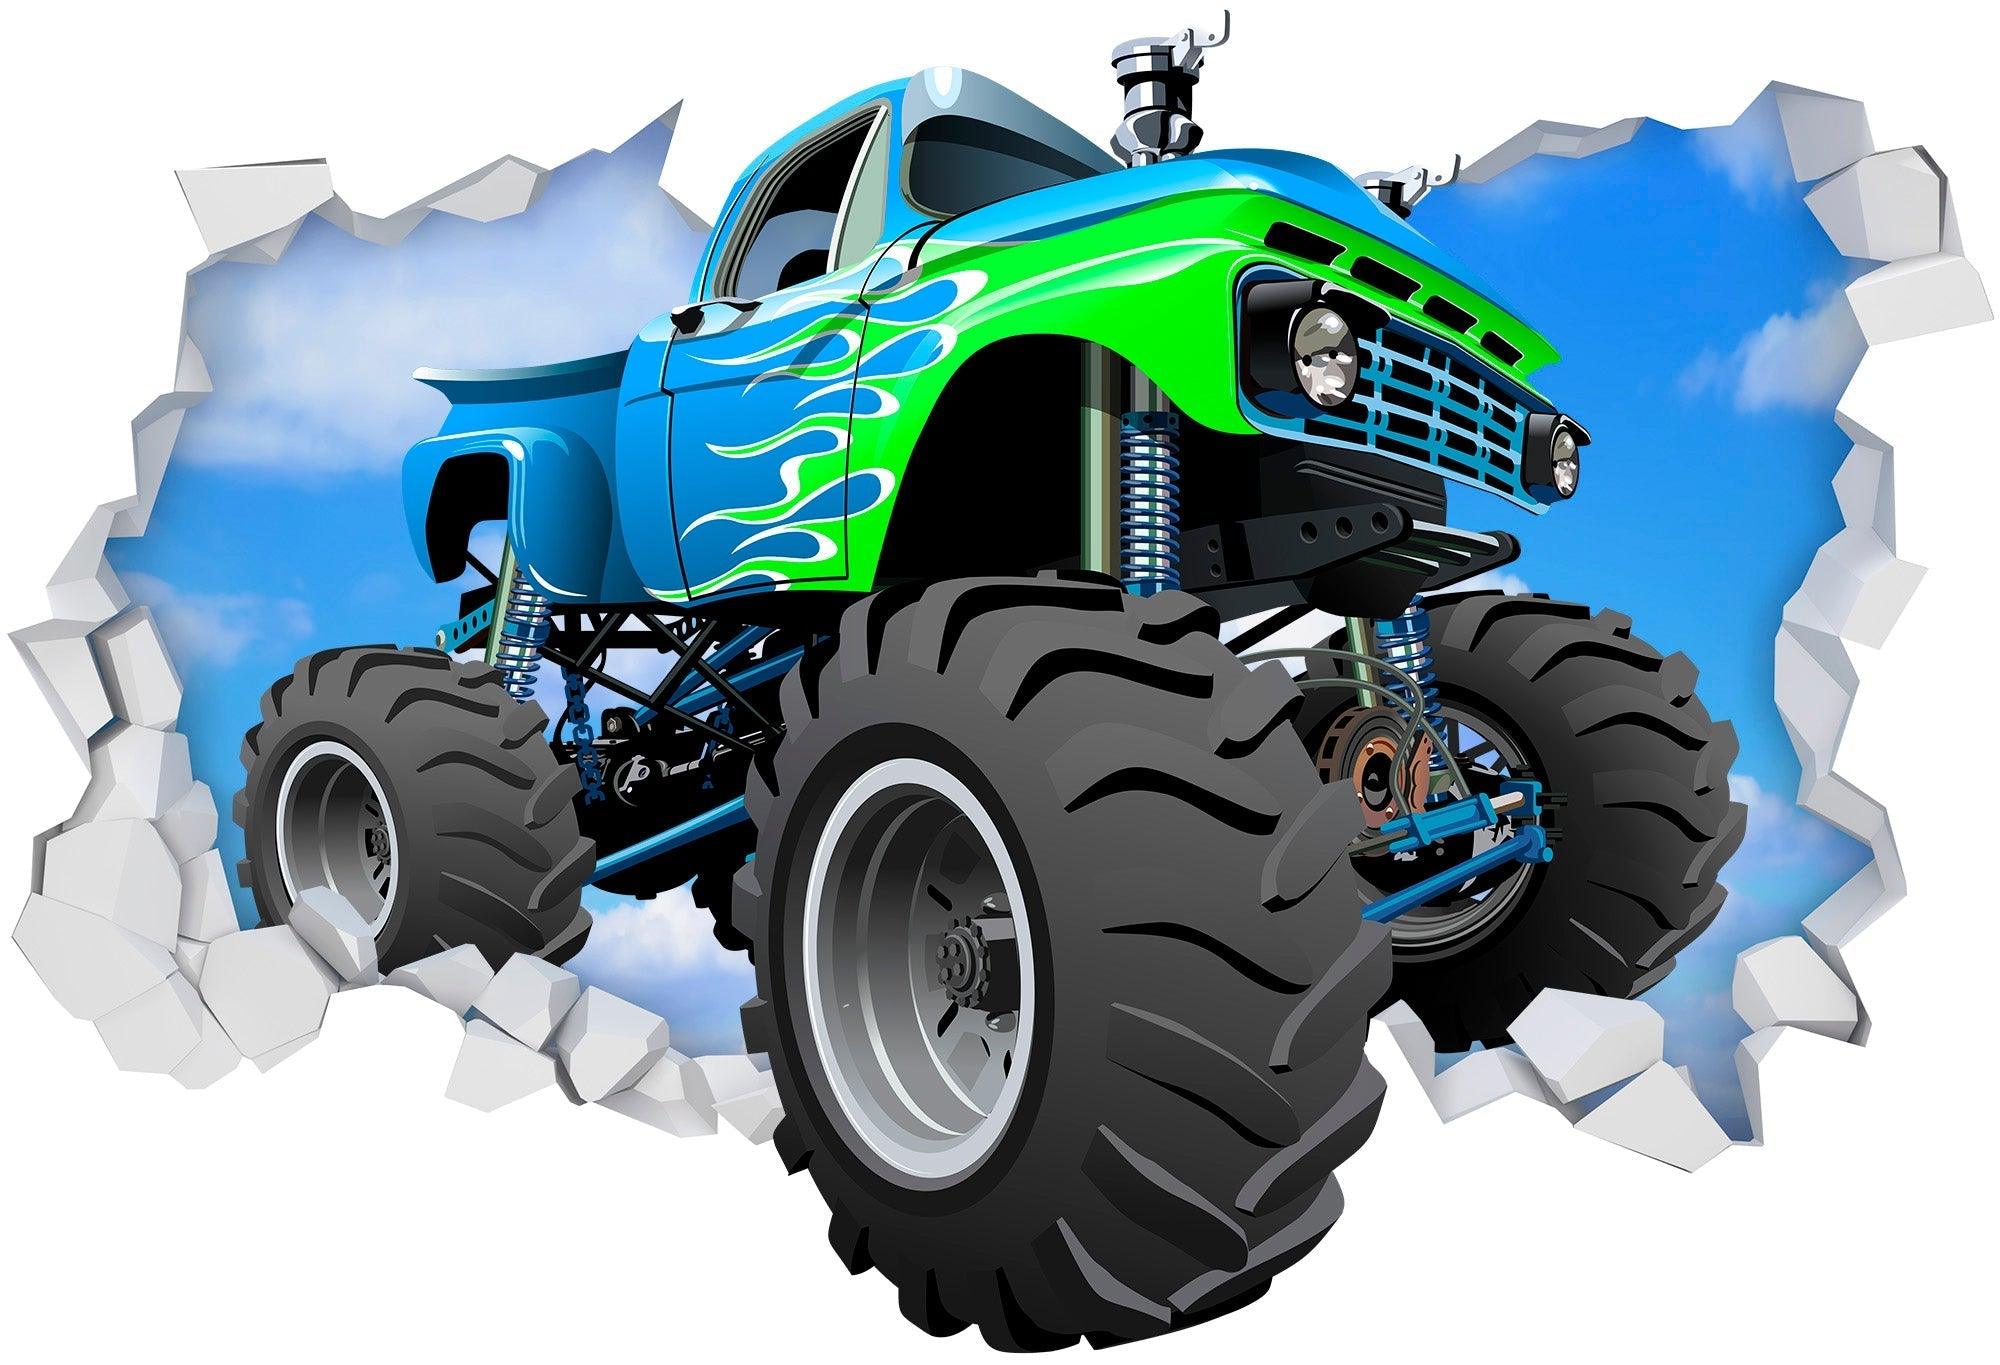 3D Green & Blue Monster Truck Breaking thru Wall, Wall Decal Sticker, Removable 108